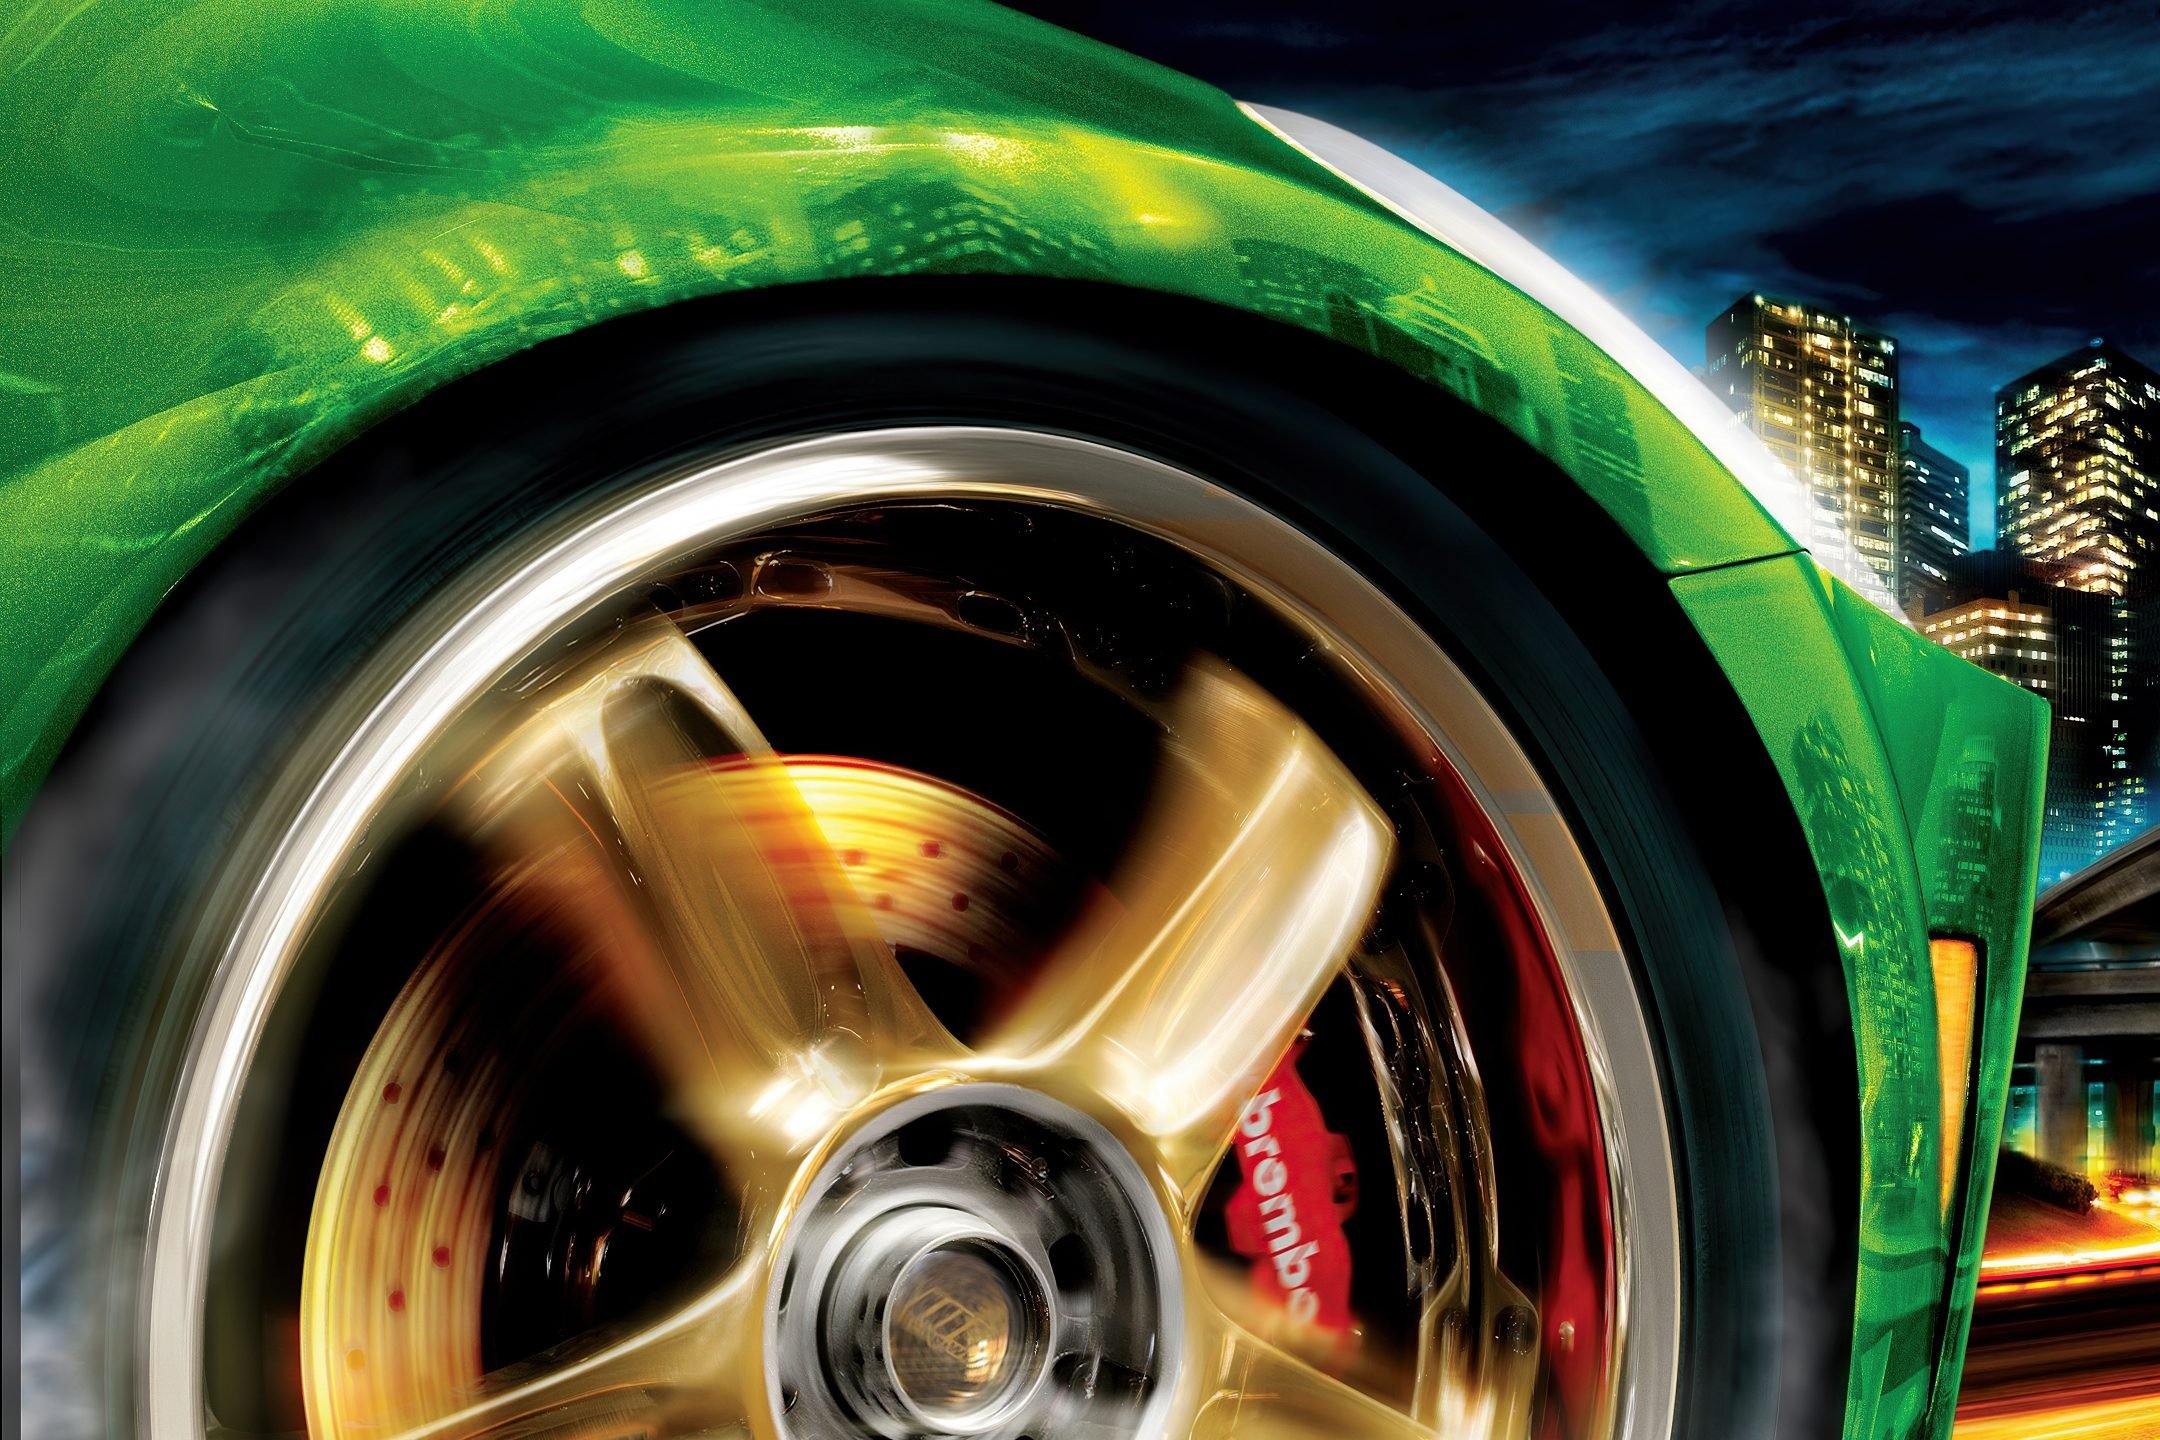 Need for Speed II: trilha sonora obrigatória para fãs de heavy metal